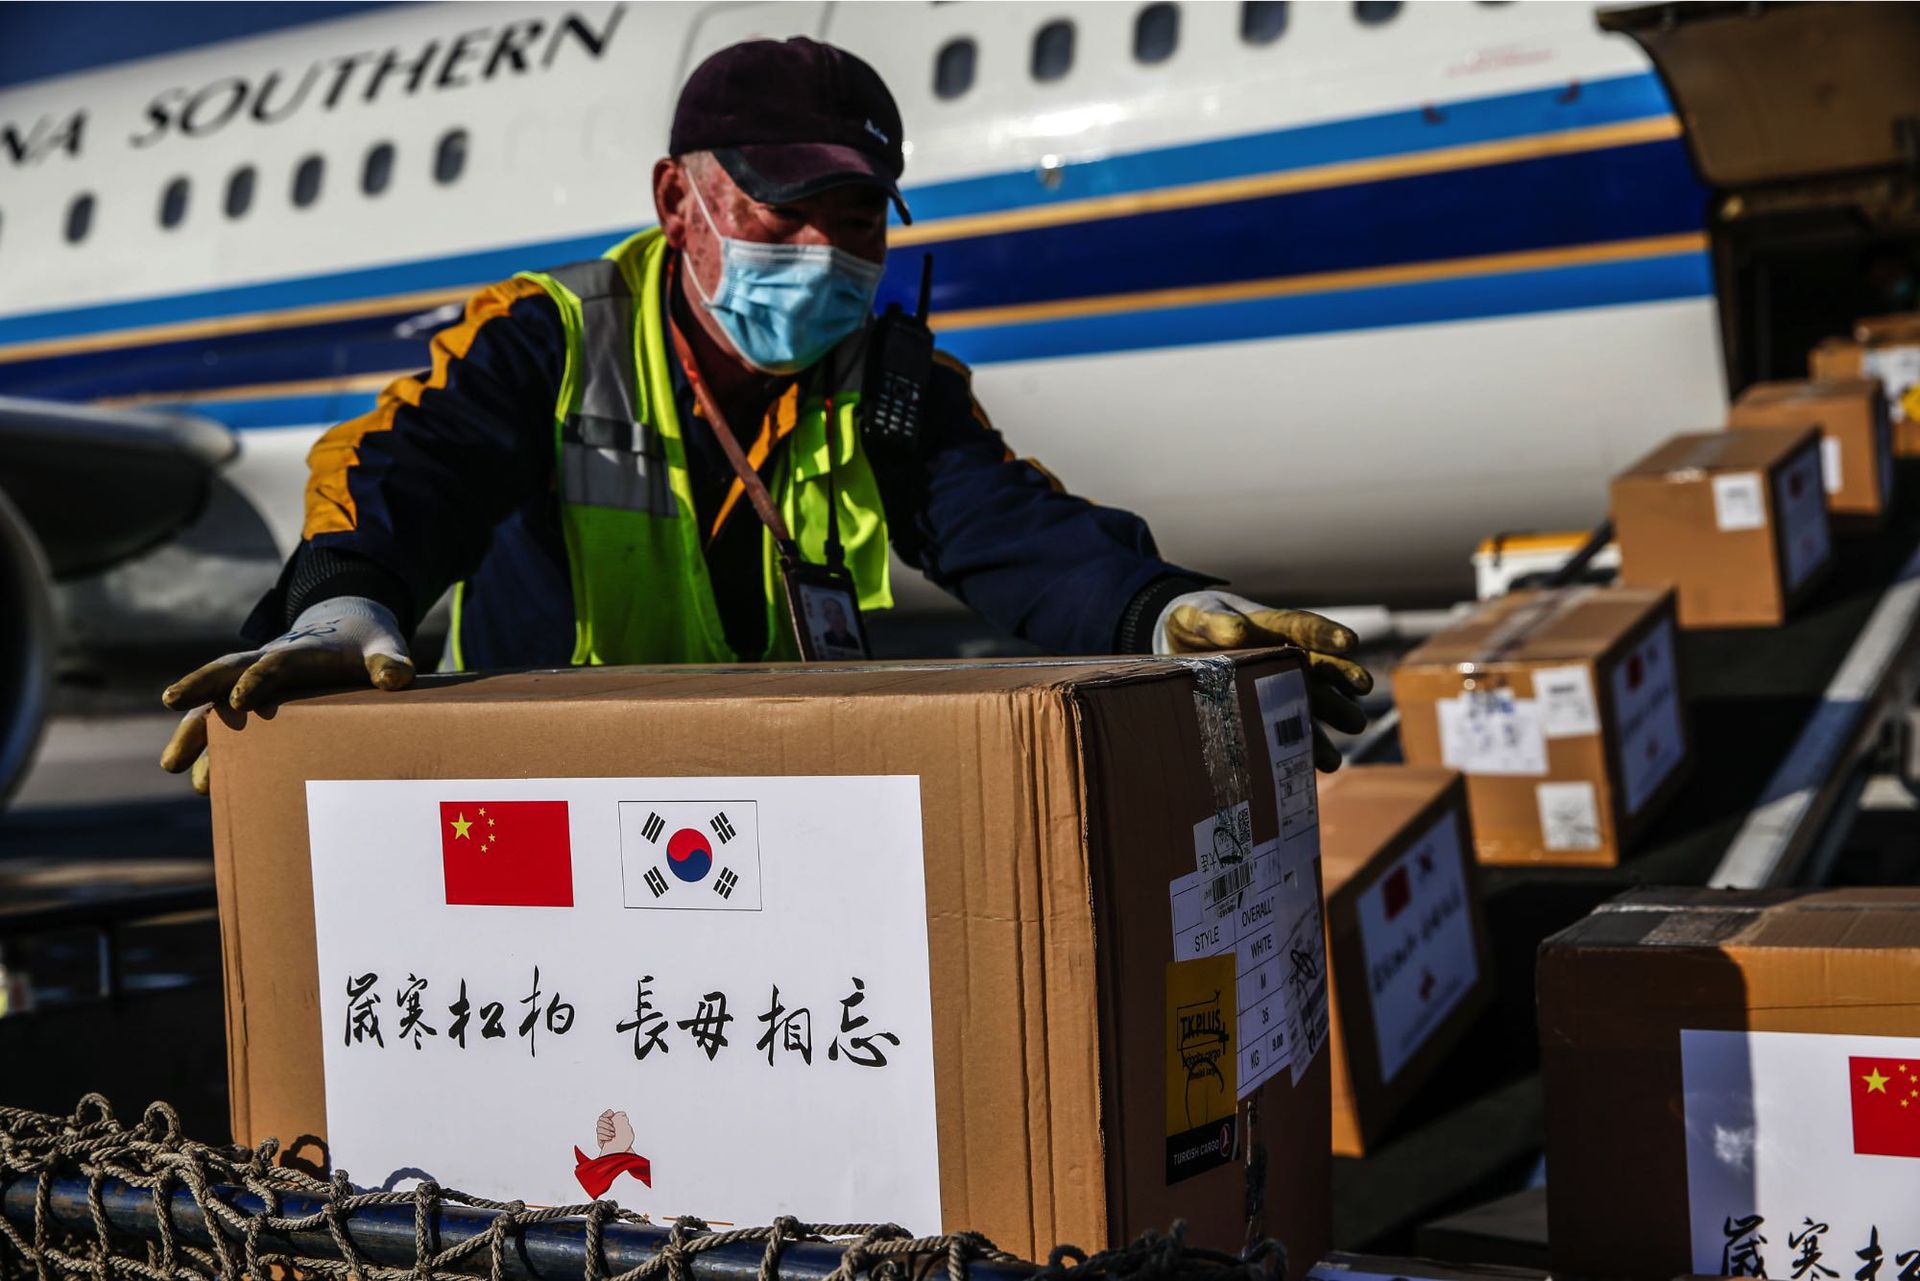 中国向海外捐赠和输出的物资质量受到质疑。图为今年3月沈阳桃仙国际机场将捐赠给韩国的防疫物资装机。 （新华社）